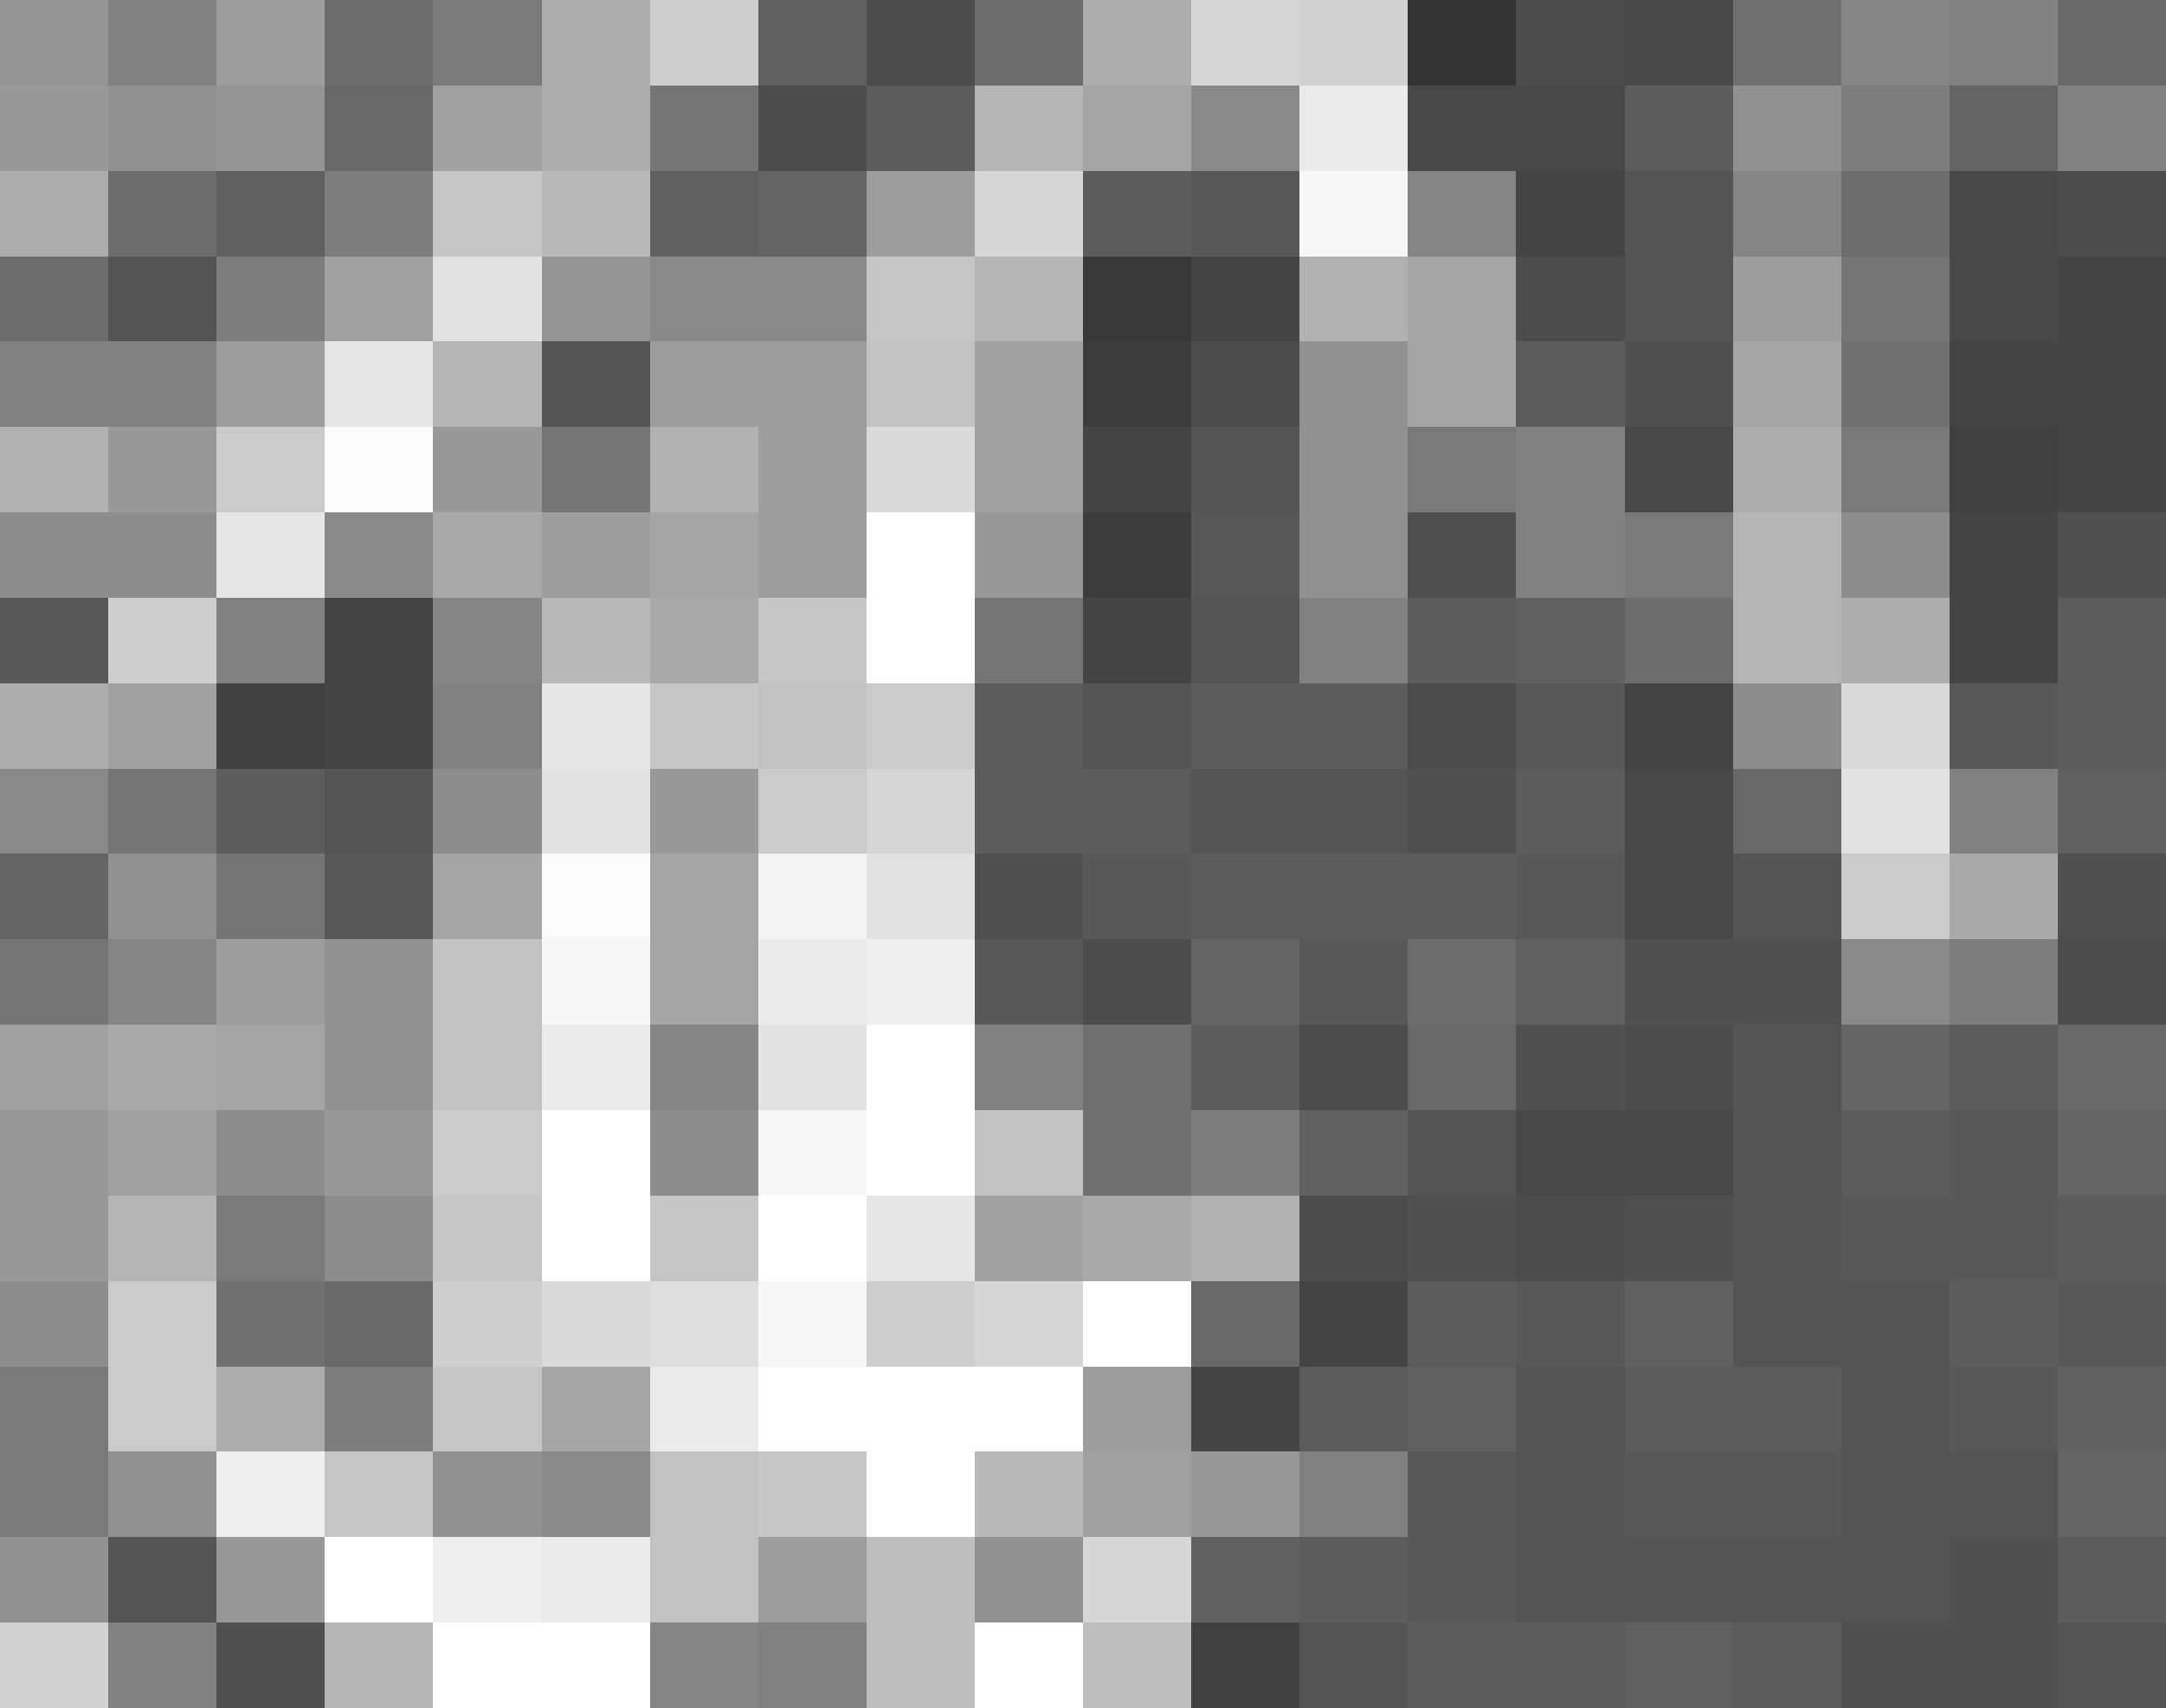 KonspPreamb 2013/10/3 page 33 #36 2. Zagadnienie widzenia stereoskopowego powoduje, że wartości te są zazwyczaj wielokrotnościami liczby 2, np. 512 512 pikseli i 256 poziomów jasności [35].